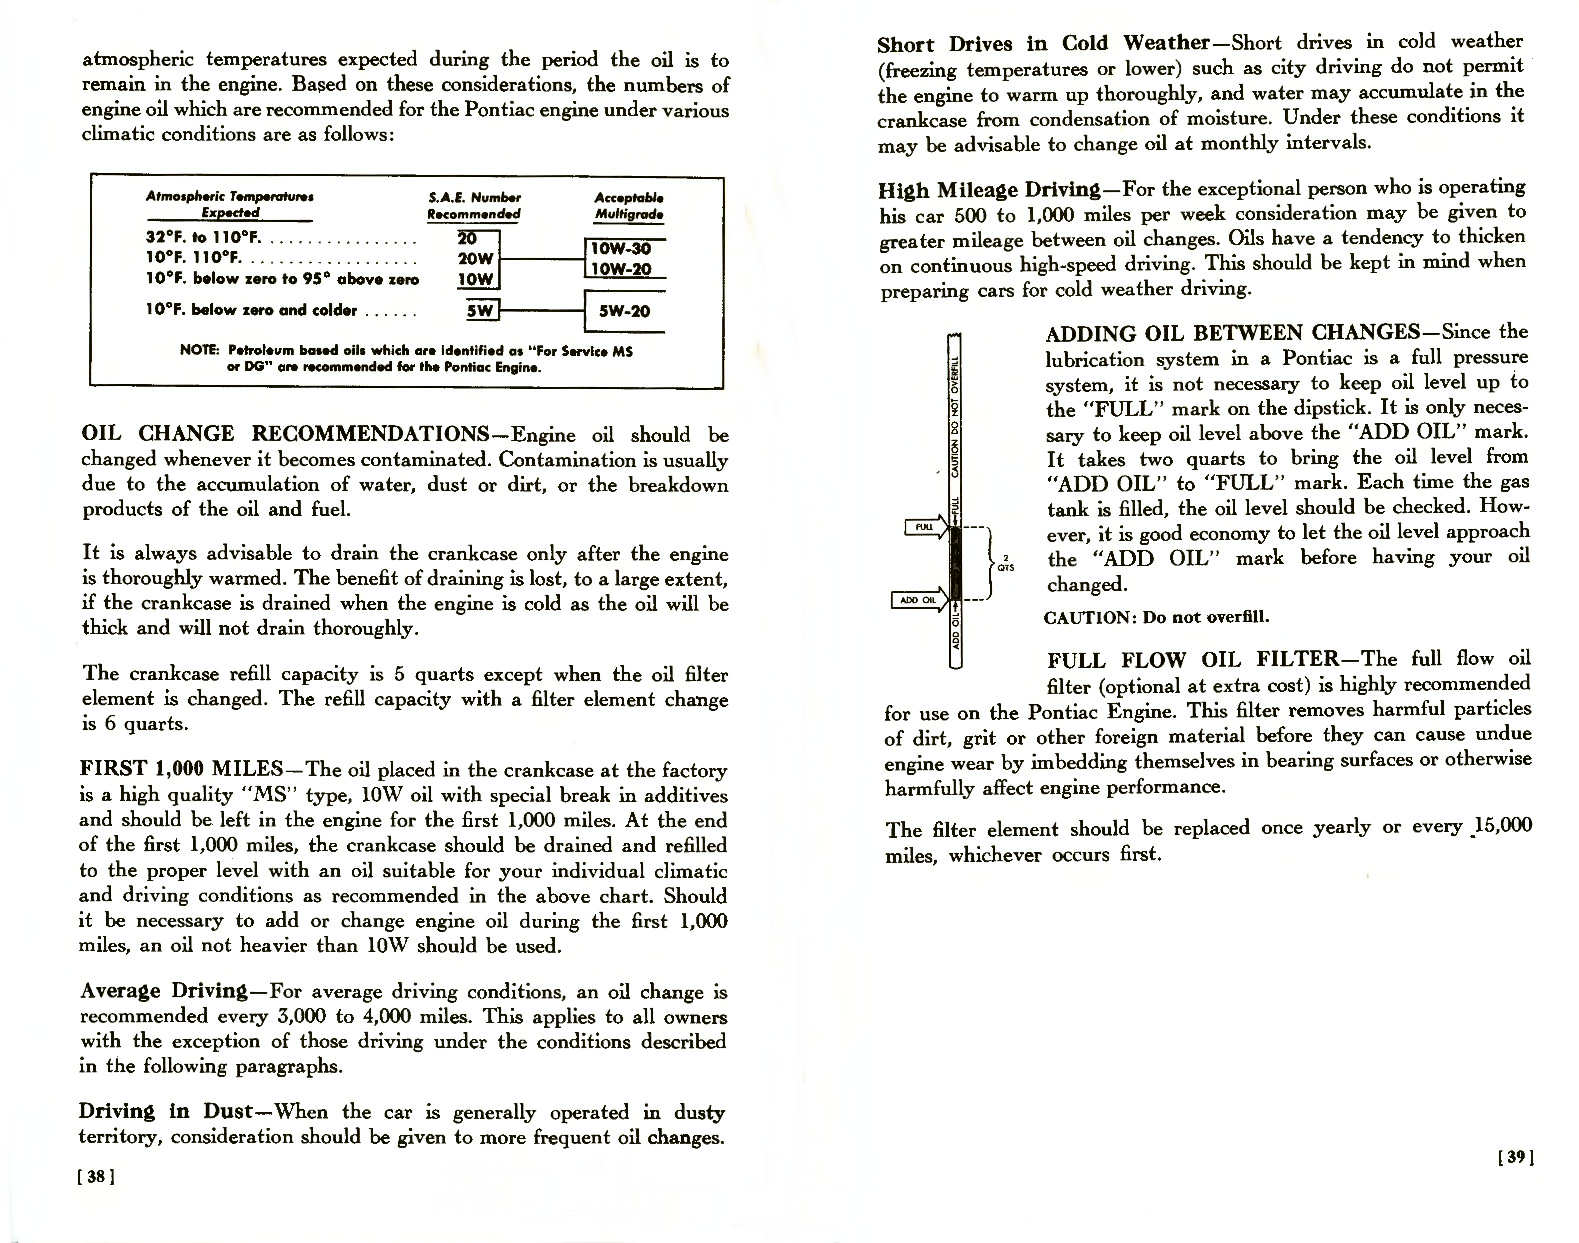 n_1957 Pontiac Owners Guide-38-39.jpg